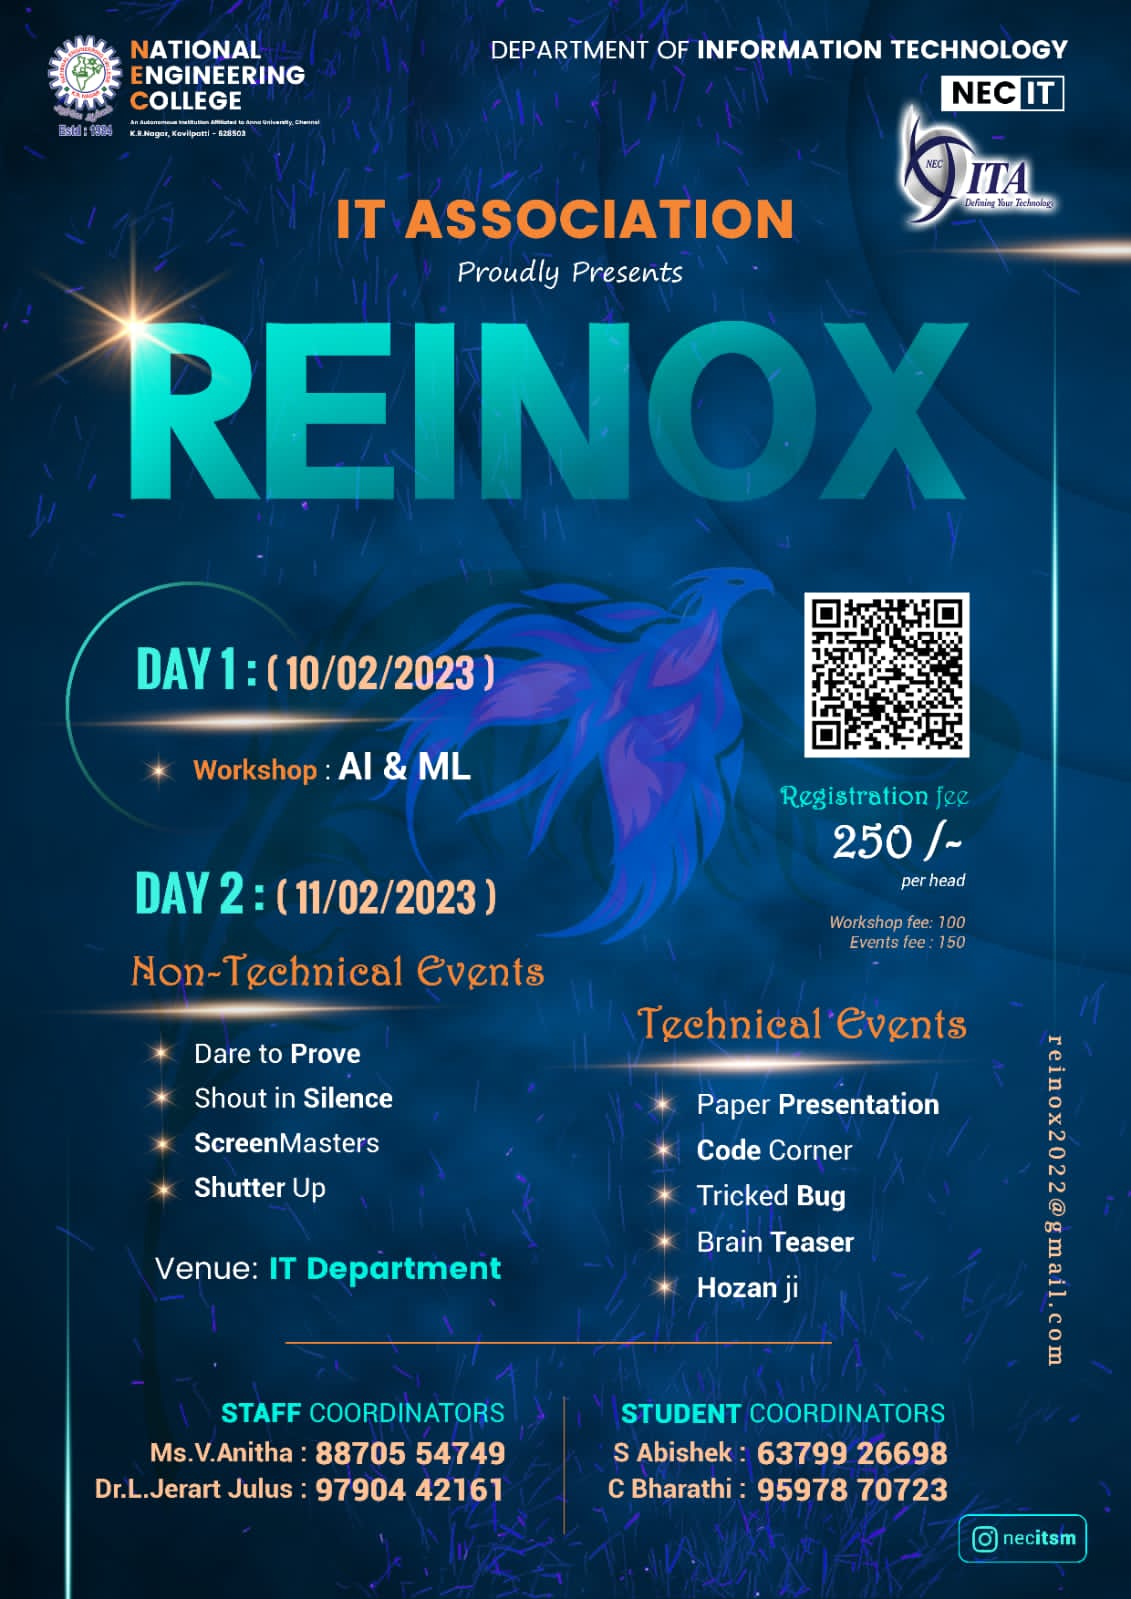 REINOX 2023